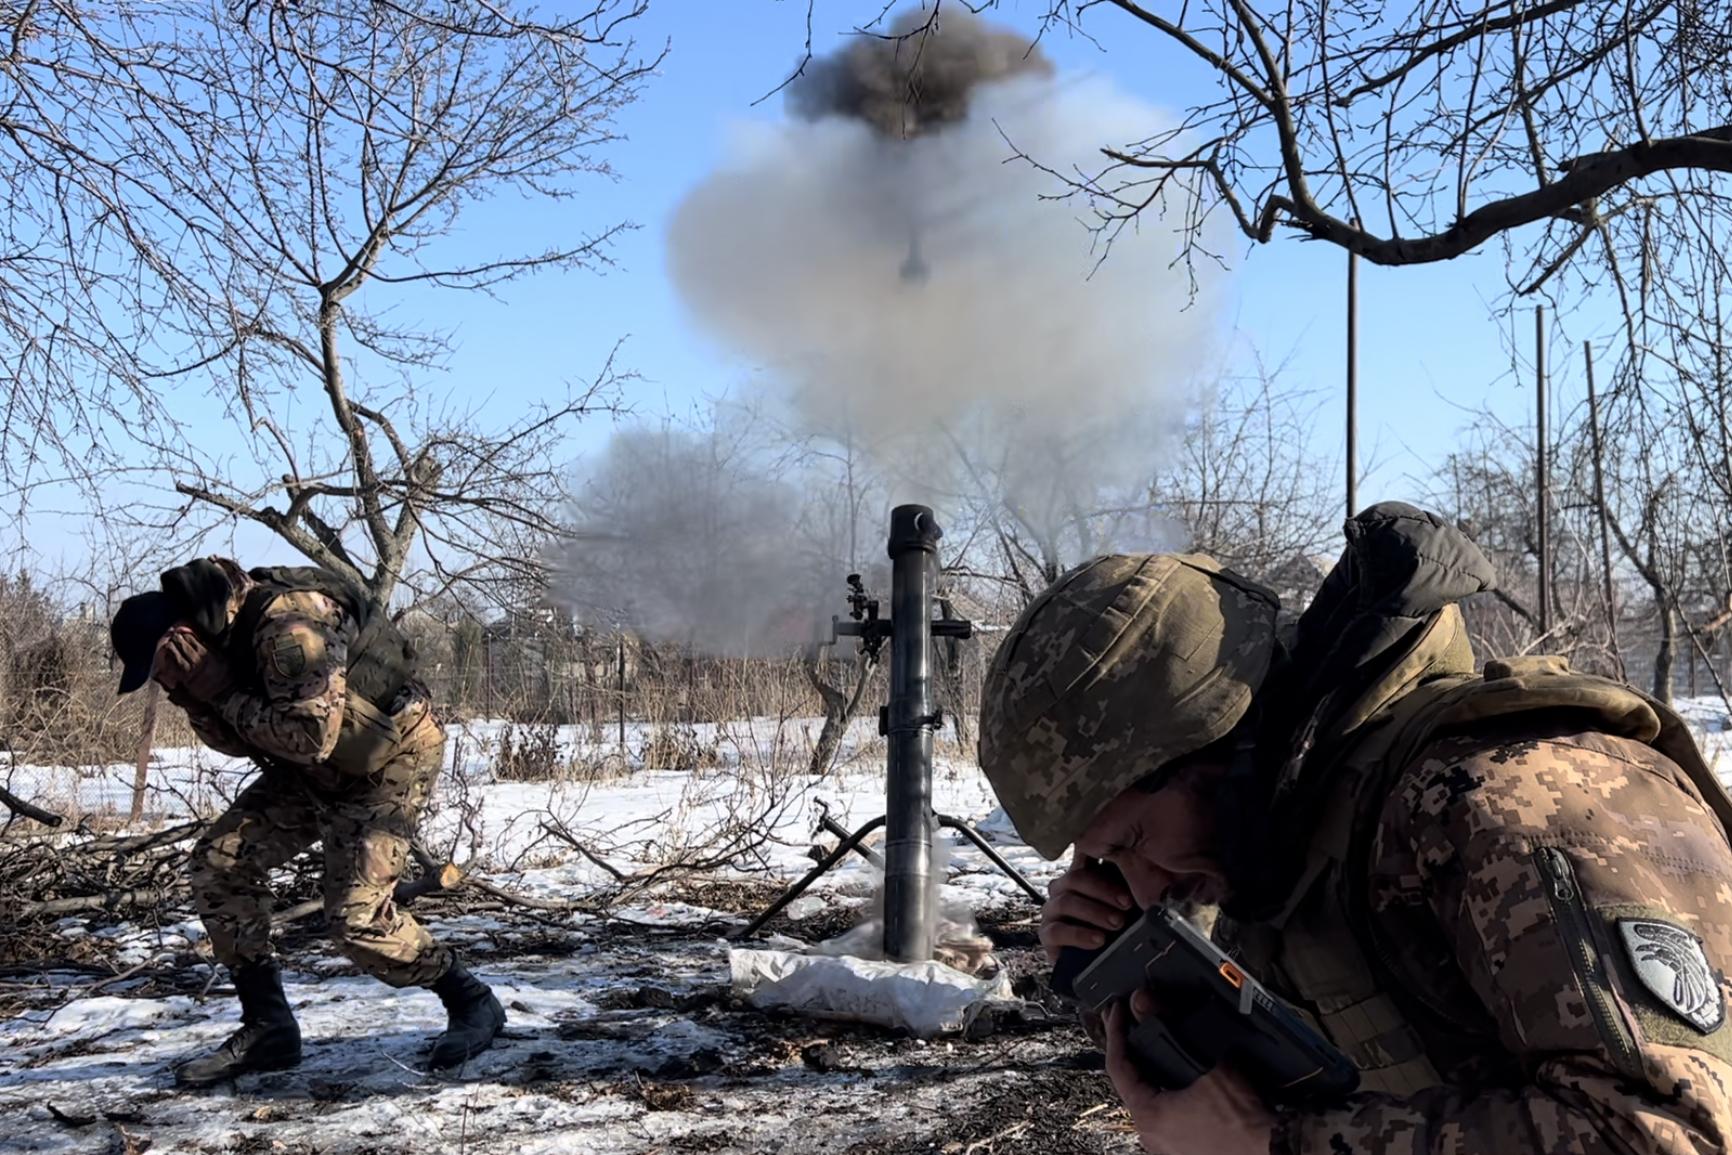 Αρχηγός ουκρανικού Στρατού: Περικυκλωμένο το Μπακχμούτ από τις ρωσικές δυνάμεις – Δεν υπάρχει διέξοδος διαφυγής